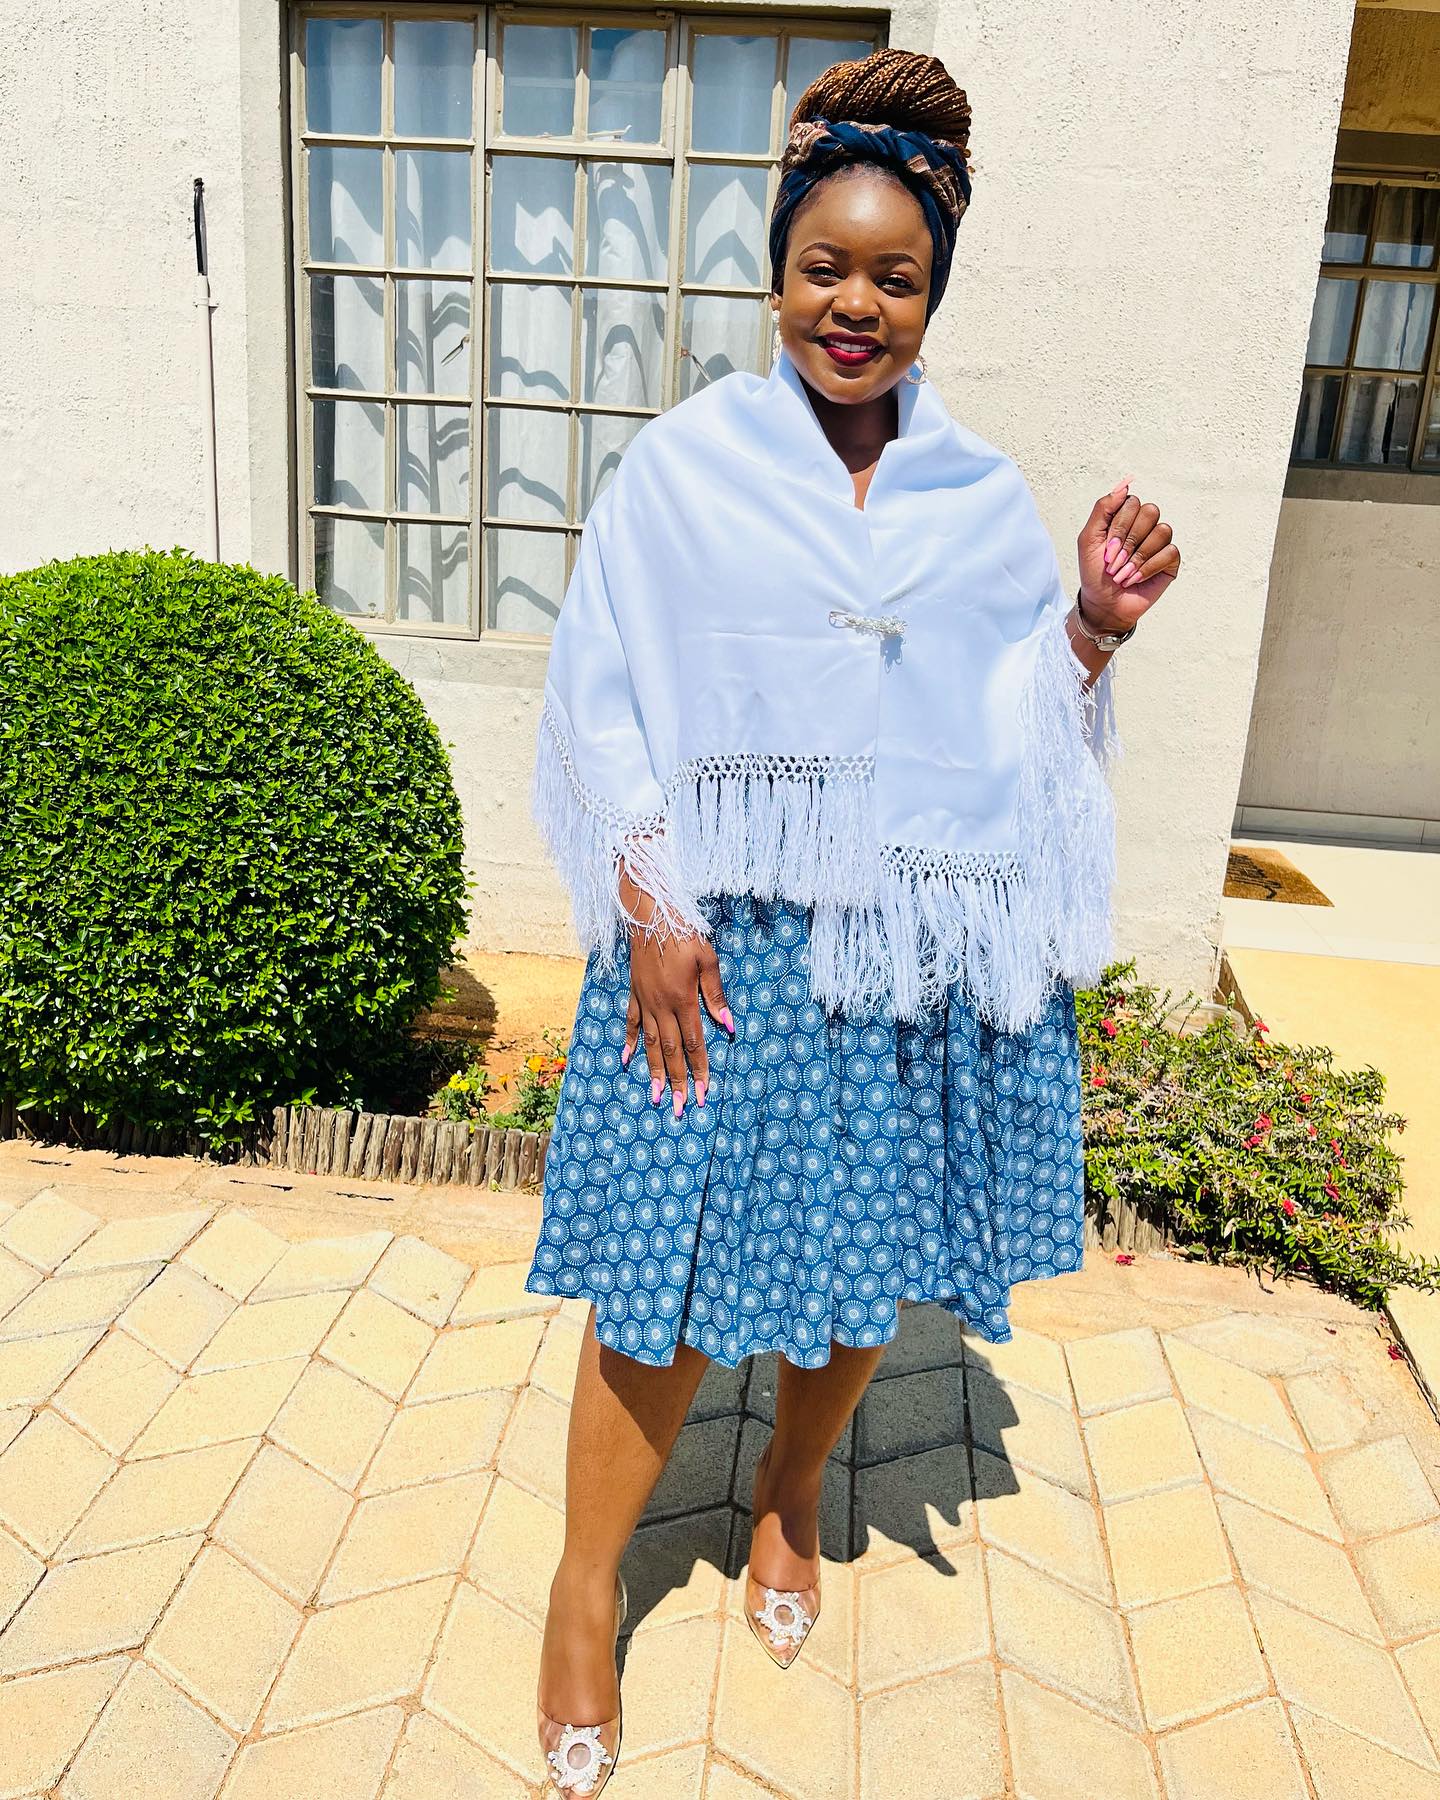 Brides of Botswana: Celebrate Your Heritage with Stunning Tswana Wedding Dresses 27